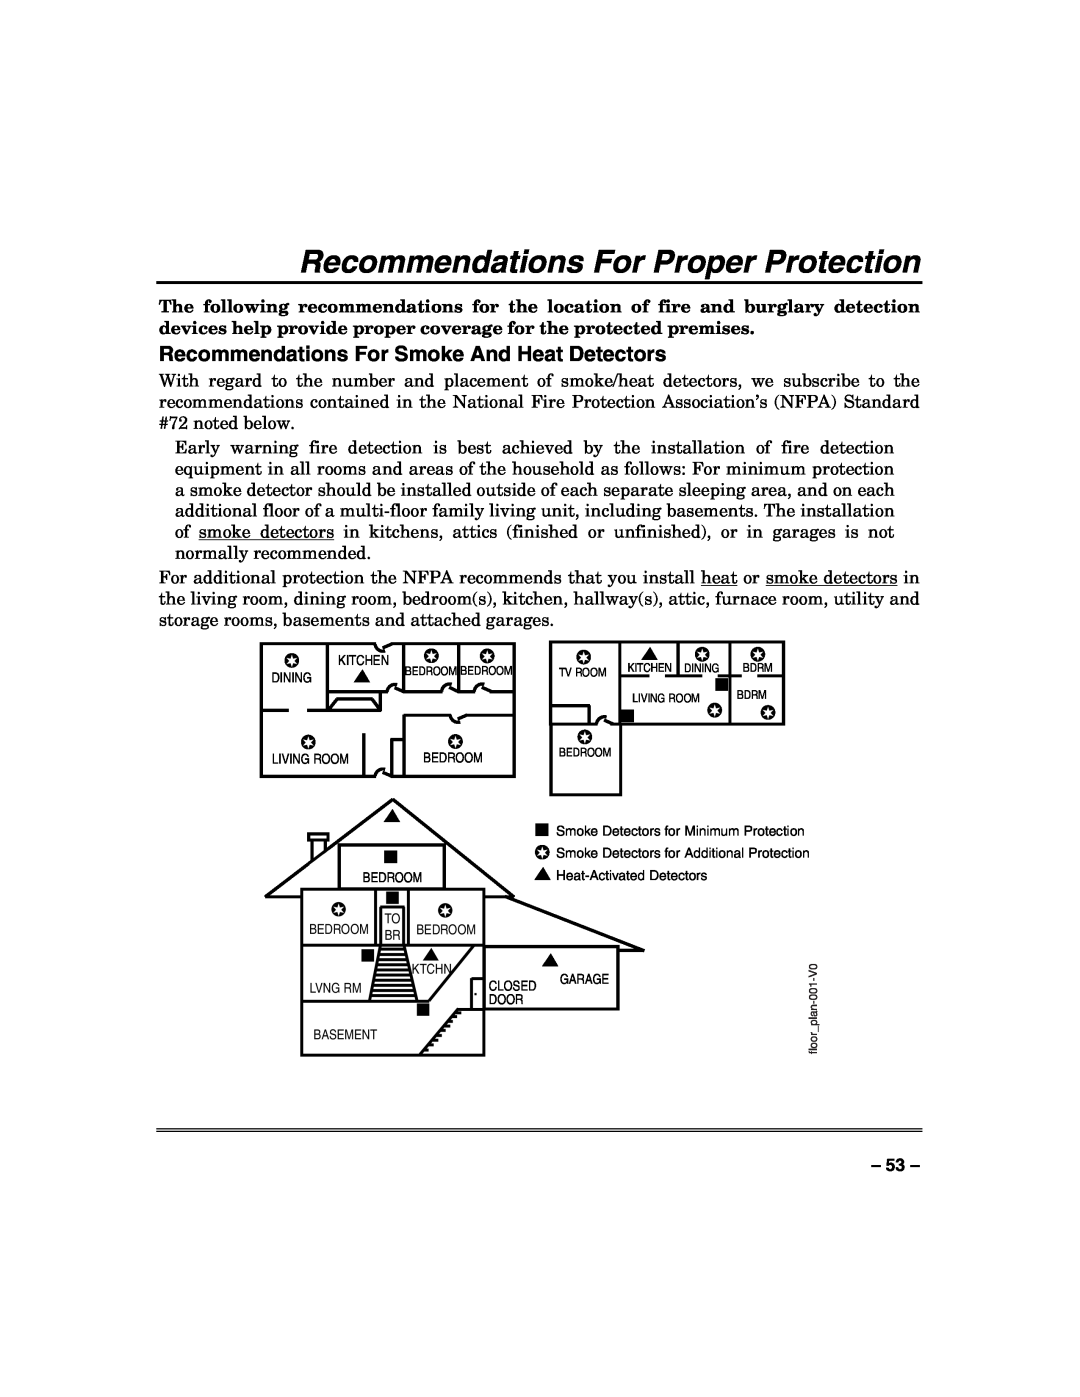 Honeywell VISTA-50PUL manual Recommendations For Proper Protection, Recommendations For Smoke And Heat Detectors 